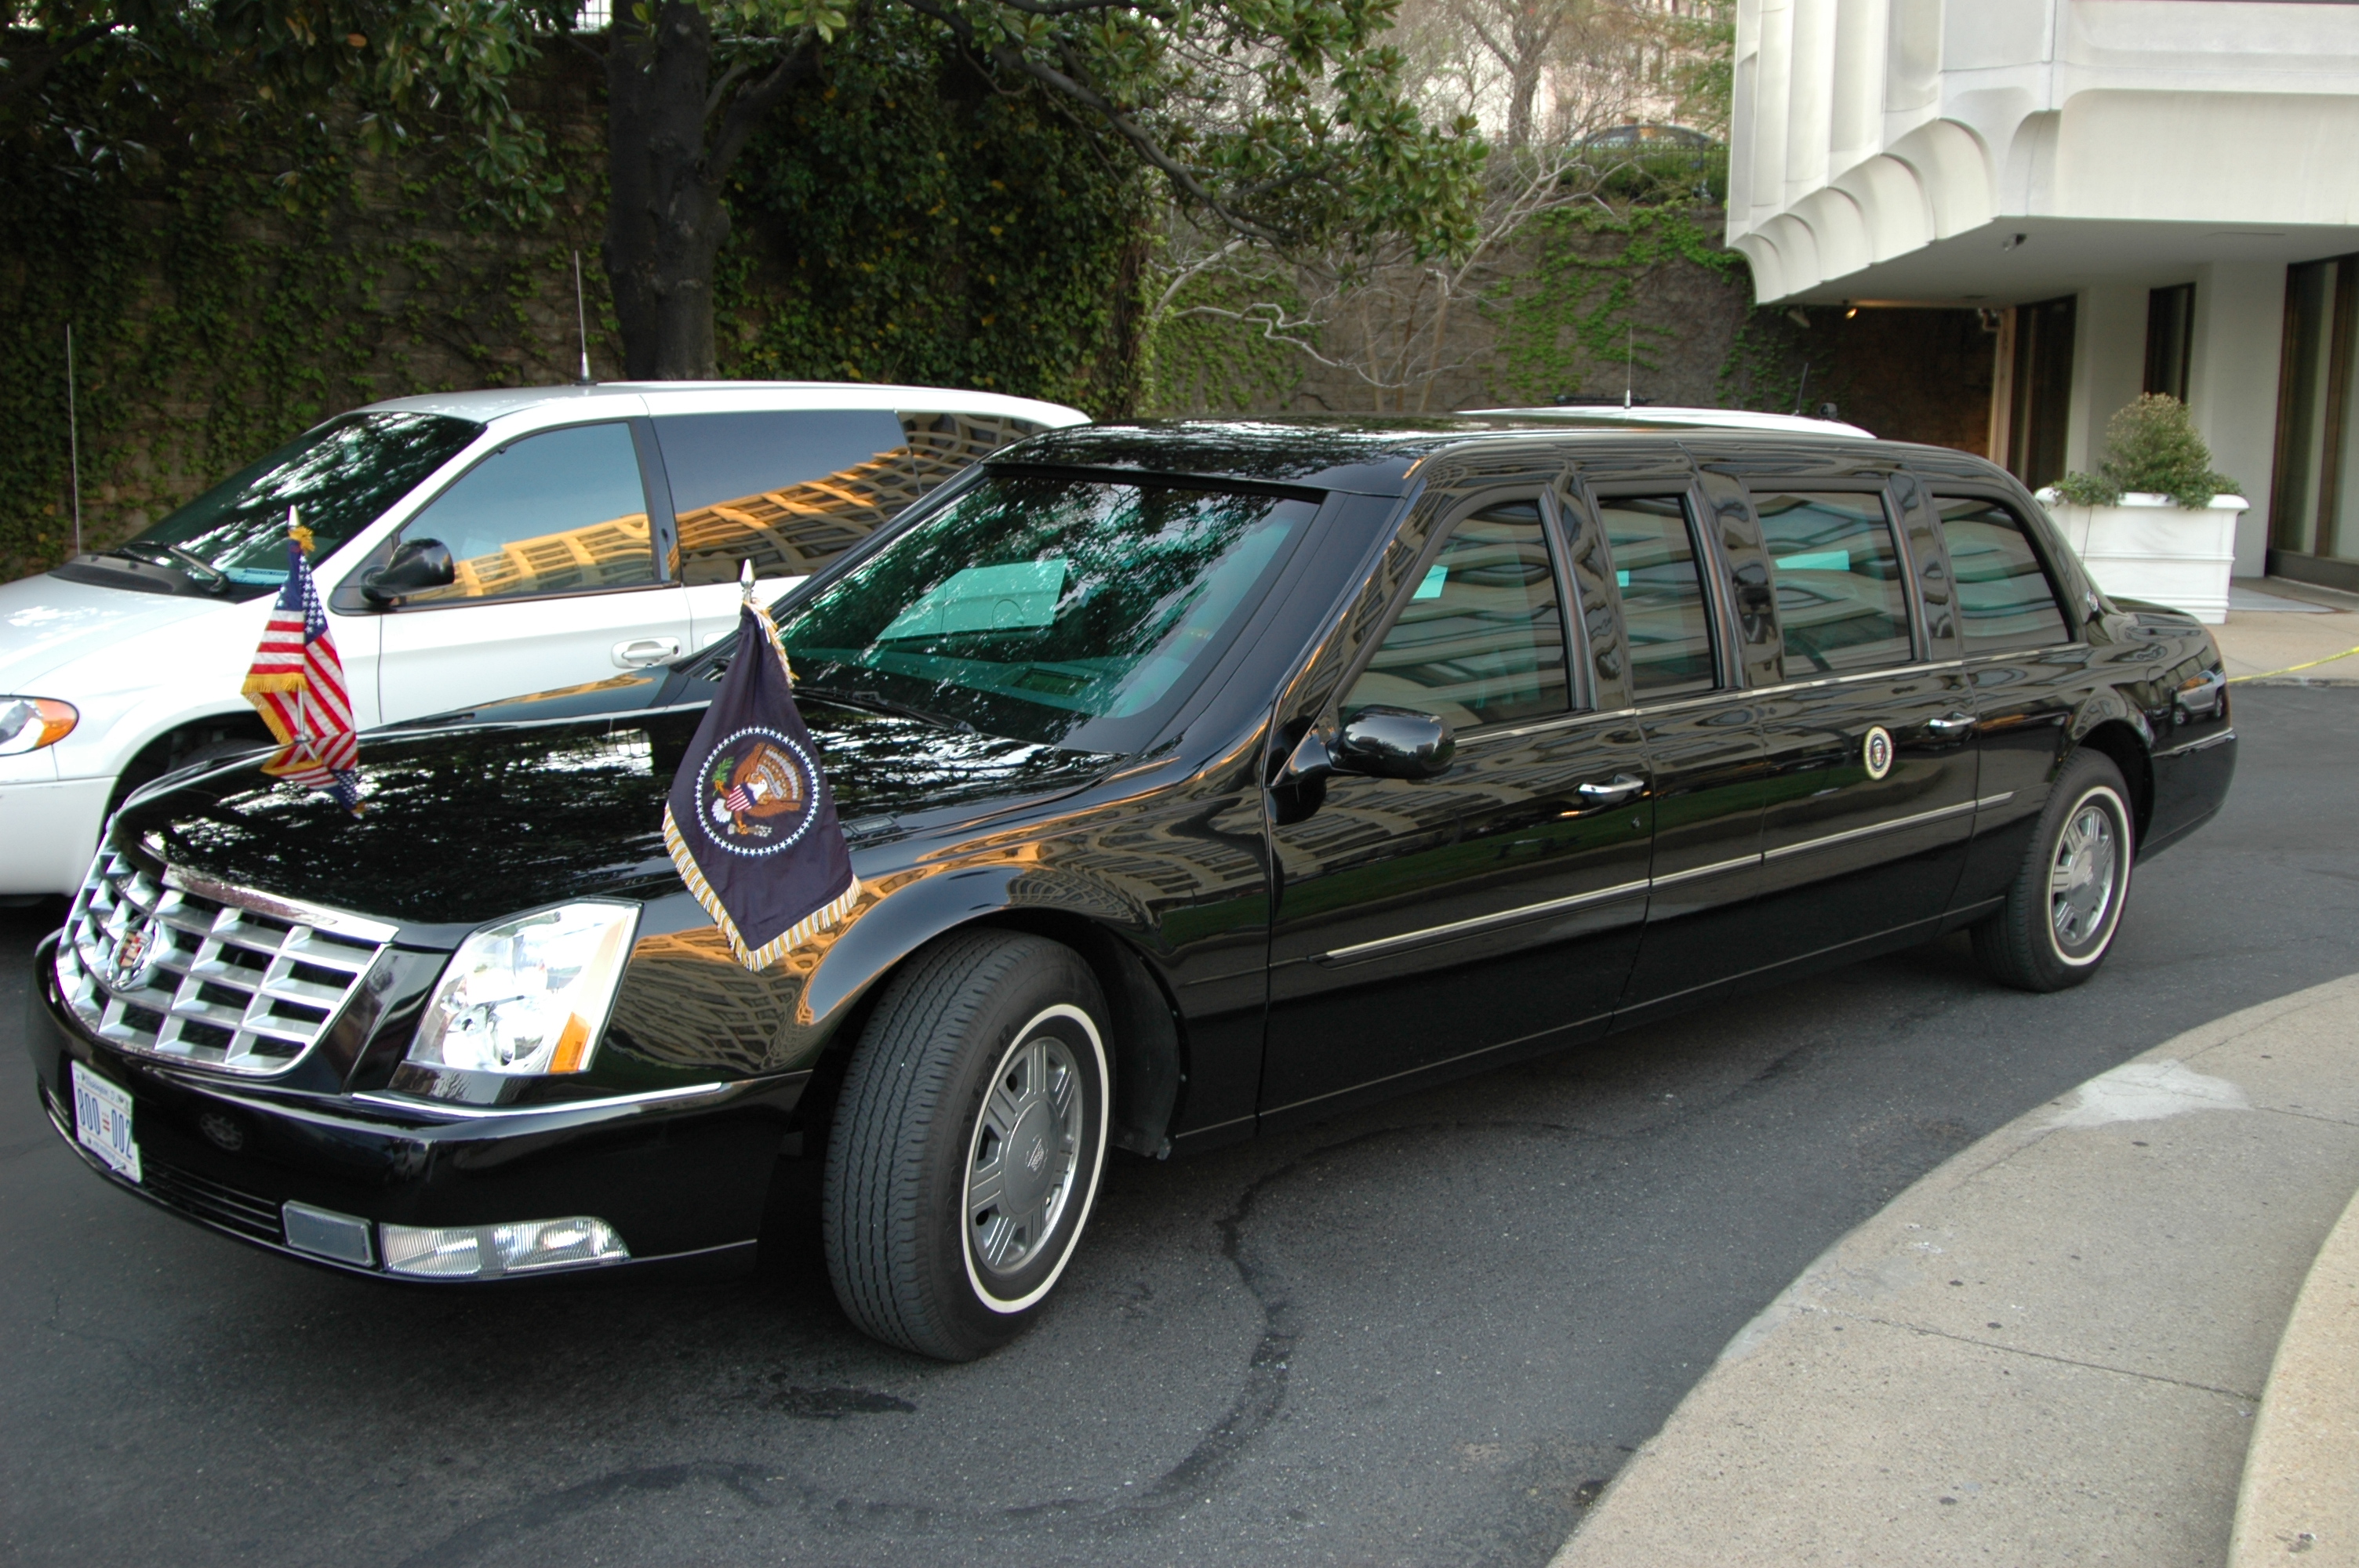 President's_limousine_outside_hotel.jpg